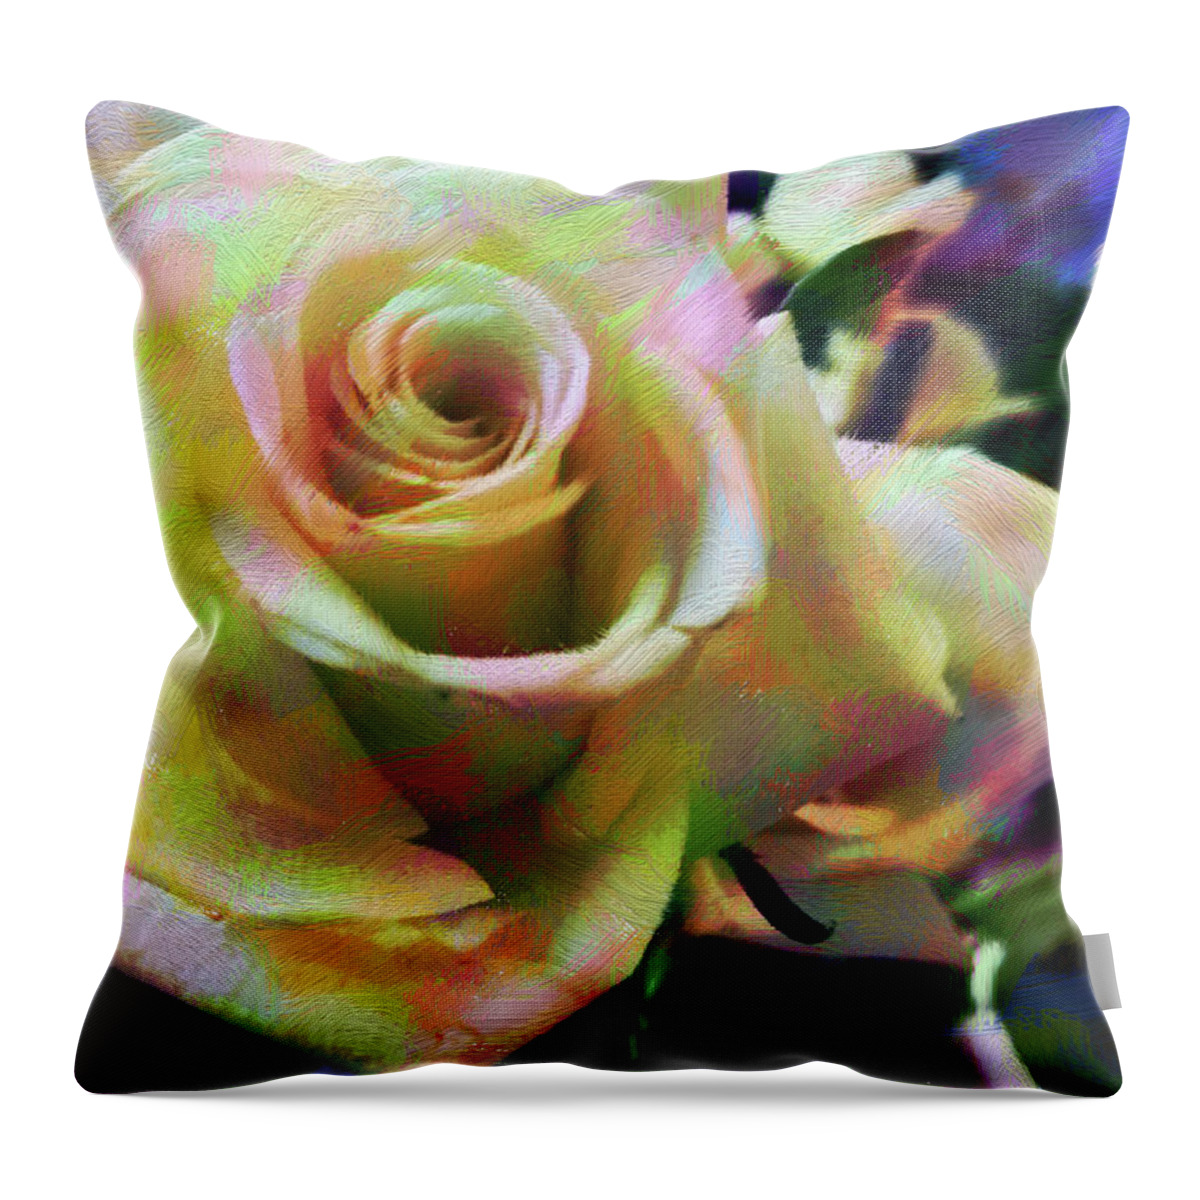 Roses Throw Pillow featuring the digital art Rose Art 2 by Karen Nicholson